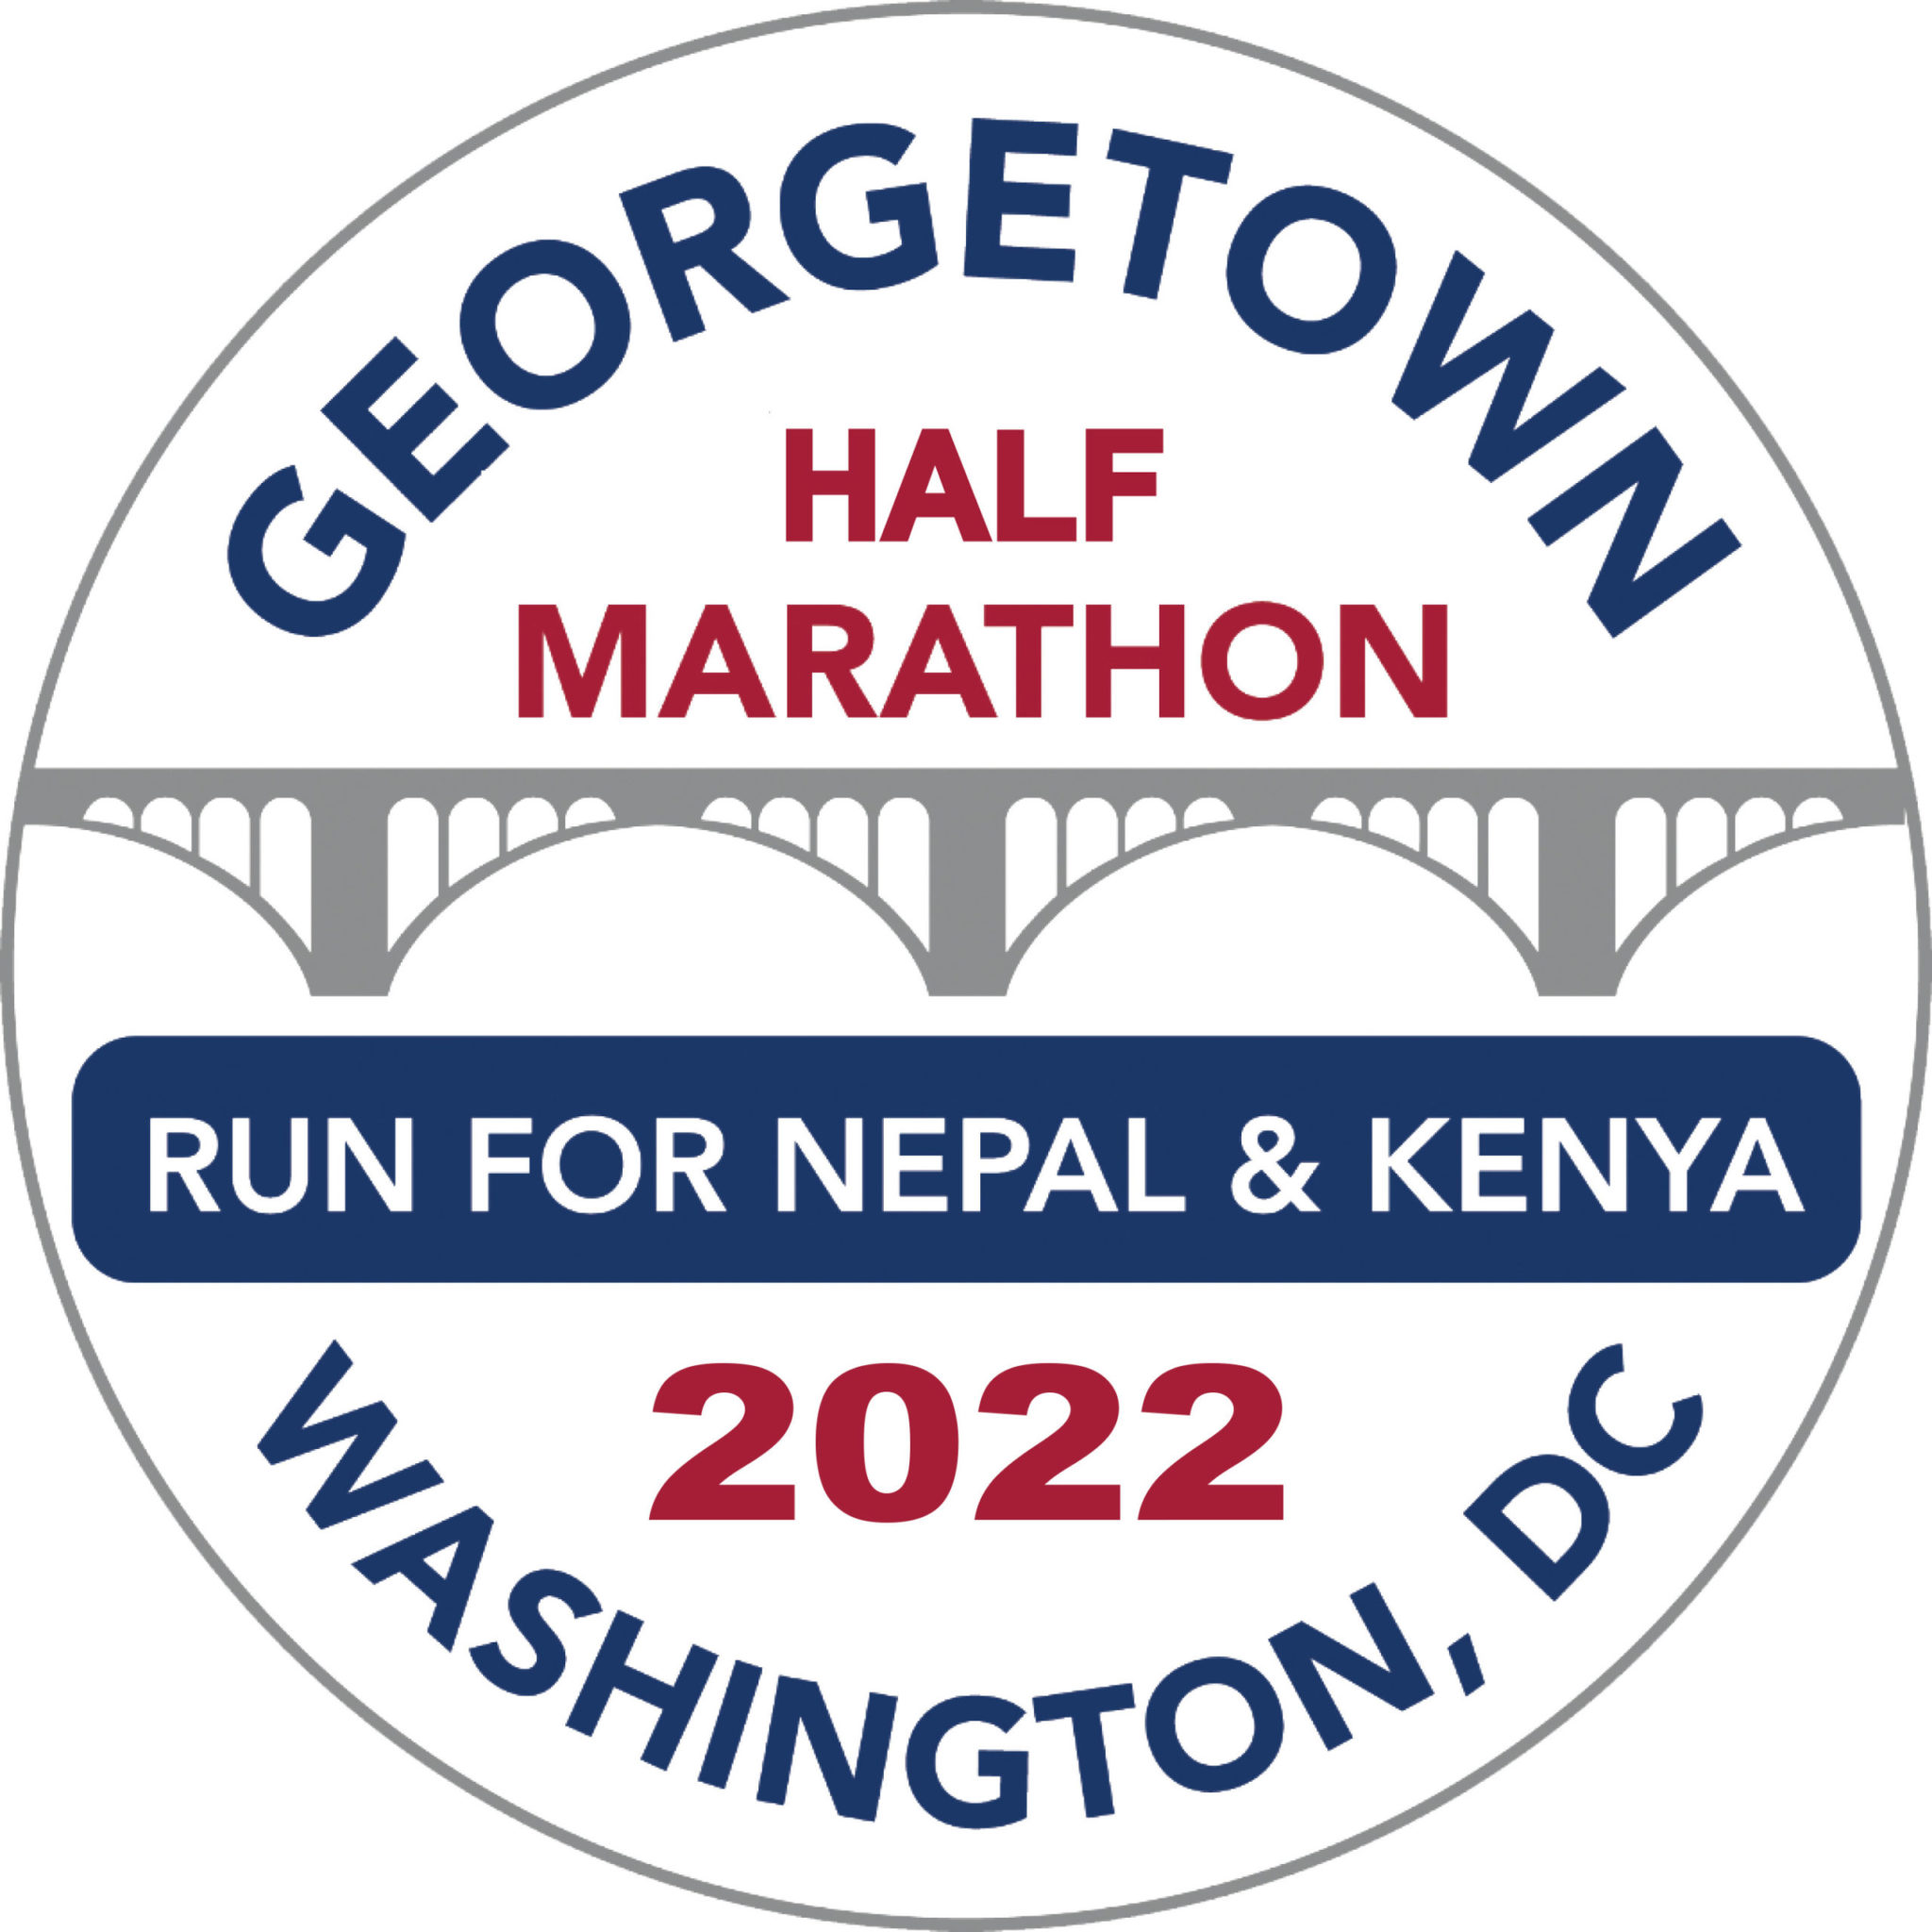 Georgetown Marathon & Half Marathon logo on RaceRaves